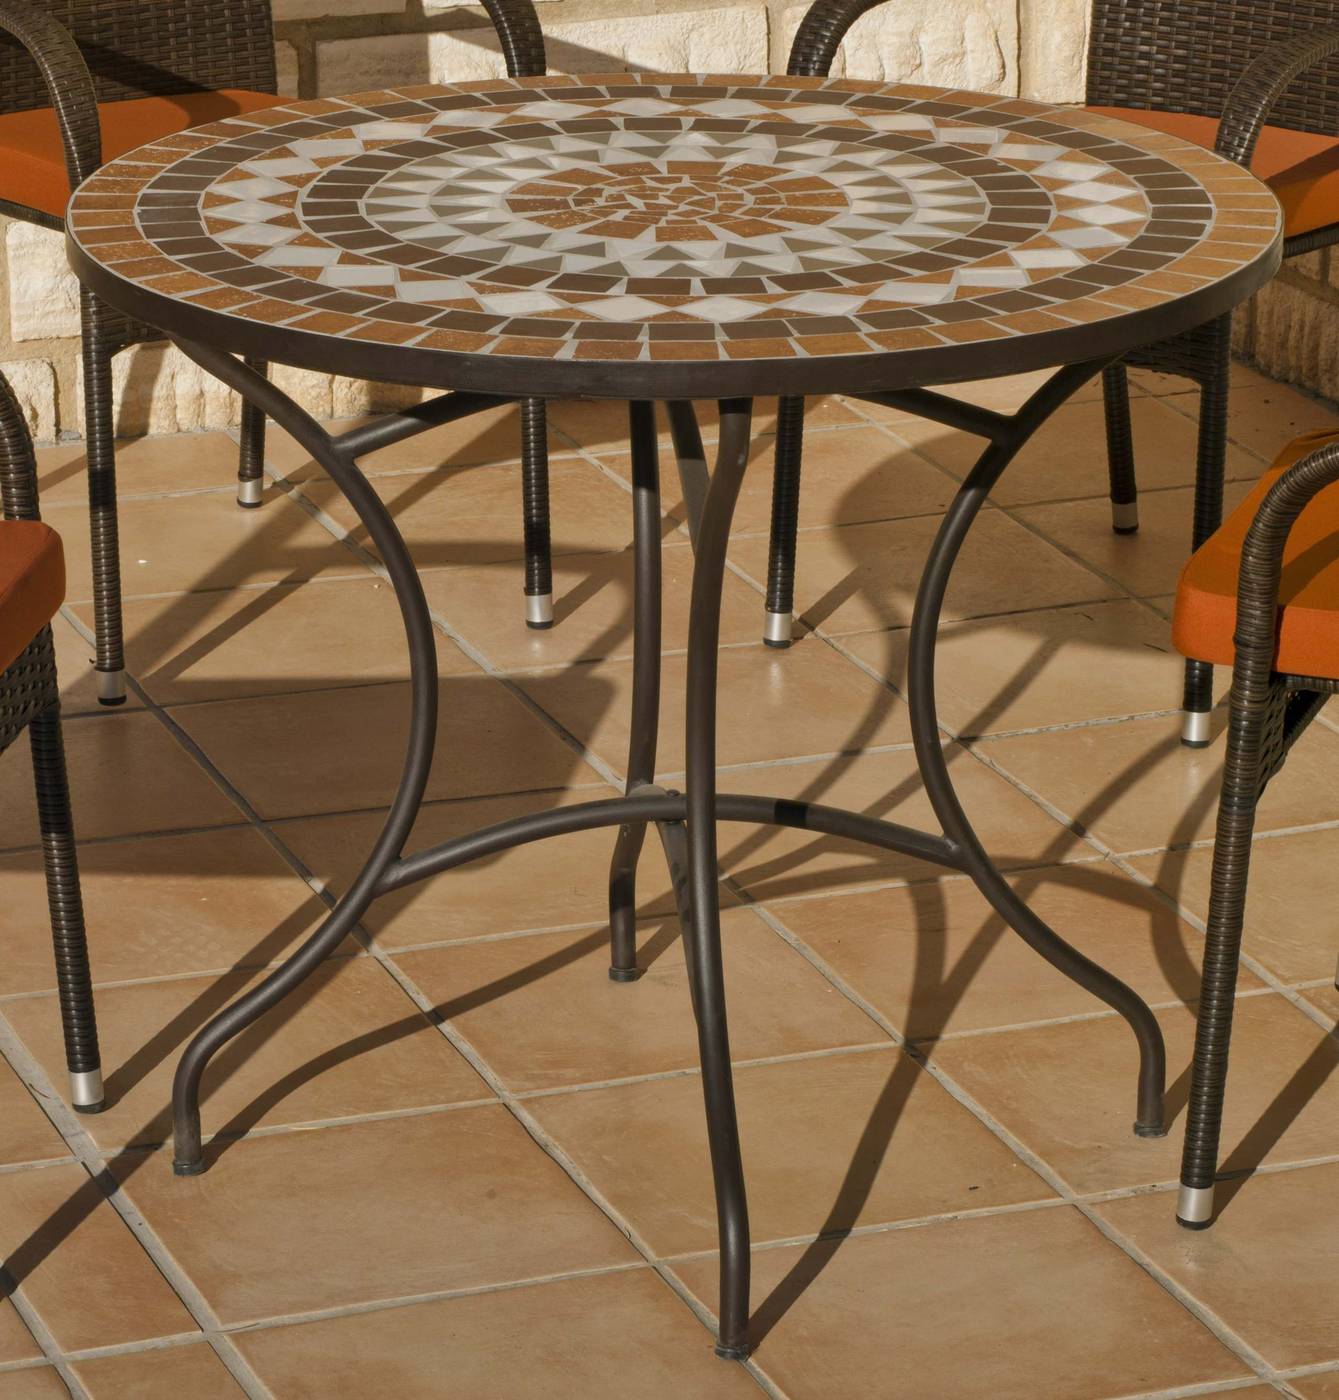 Mesa redonda mosaico. Estructura de acero forjado con patas reforzadas y panel de mosaico